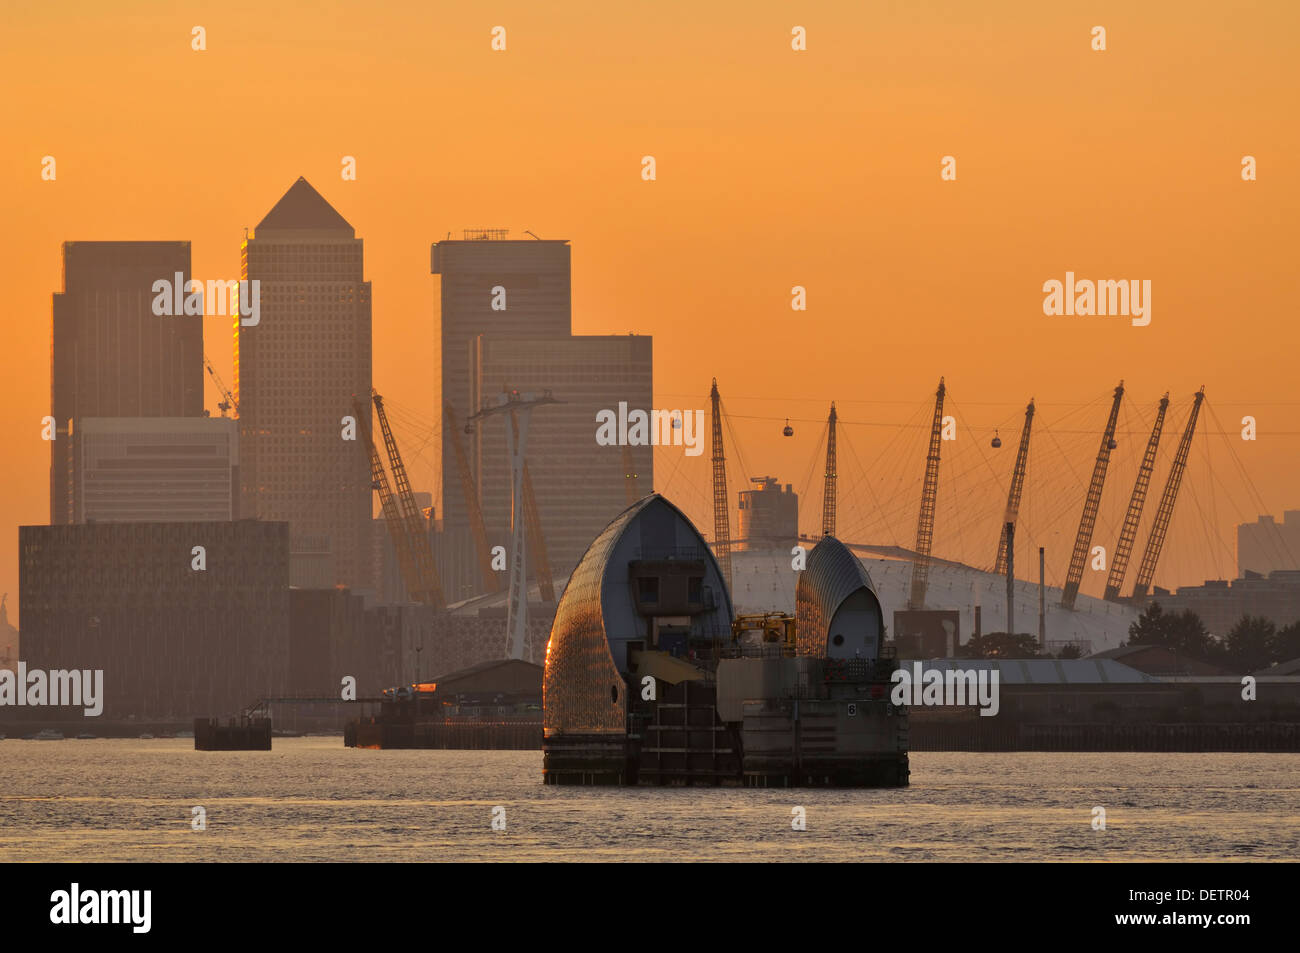 La barrière de la Tamise, Canary Wharf et l'O2 Arena au coucher du soleil, vue depuis les rives de la Tamise à Woolwich, dans le sud-est de Londres, au Royaume-Uni Banque D'Images